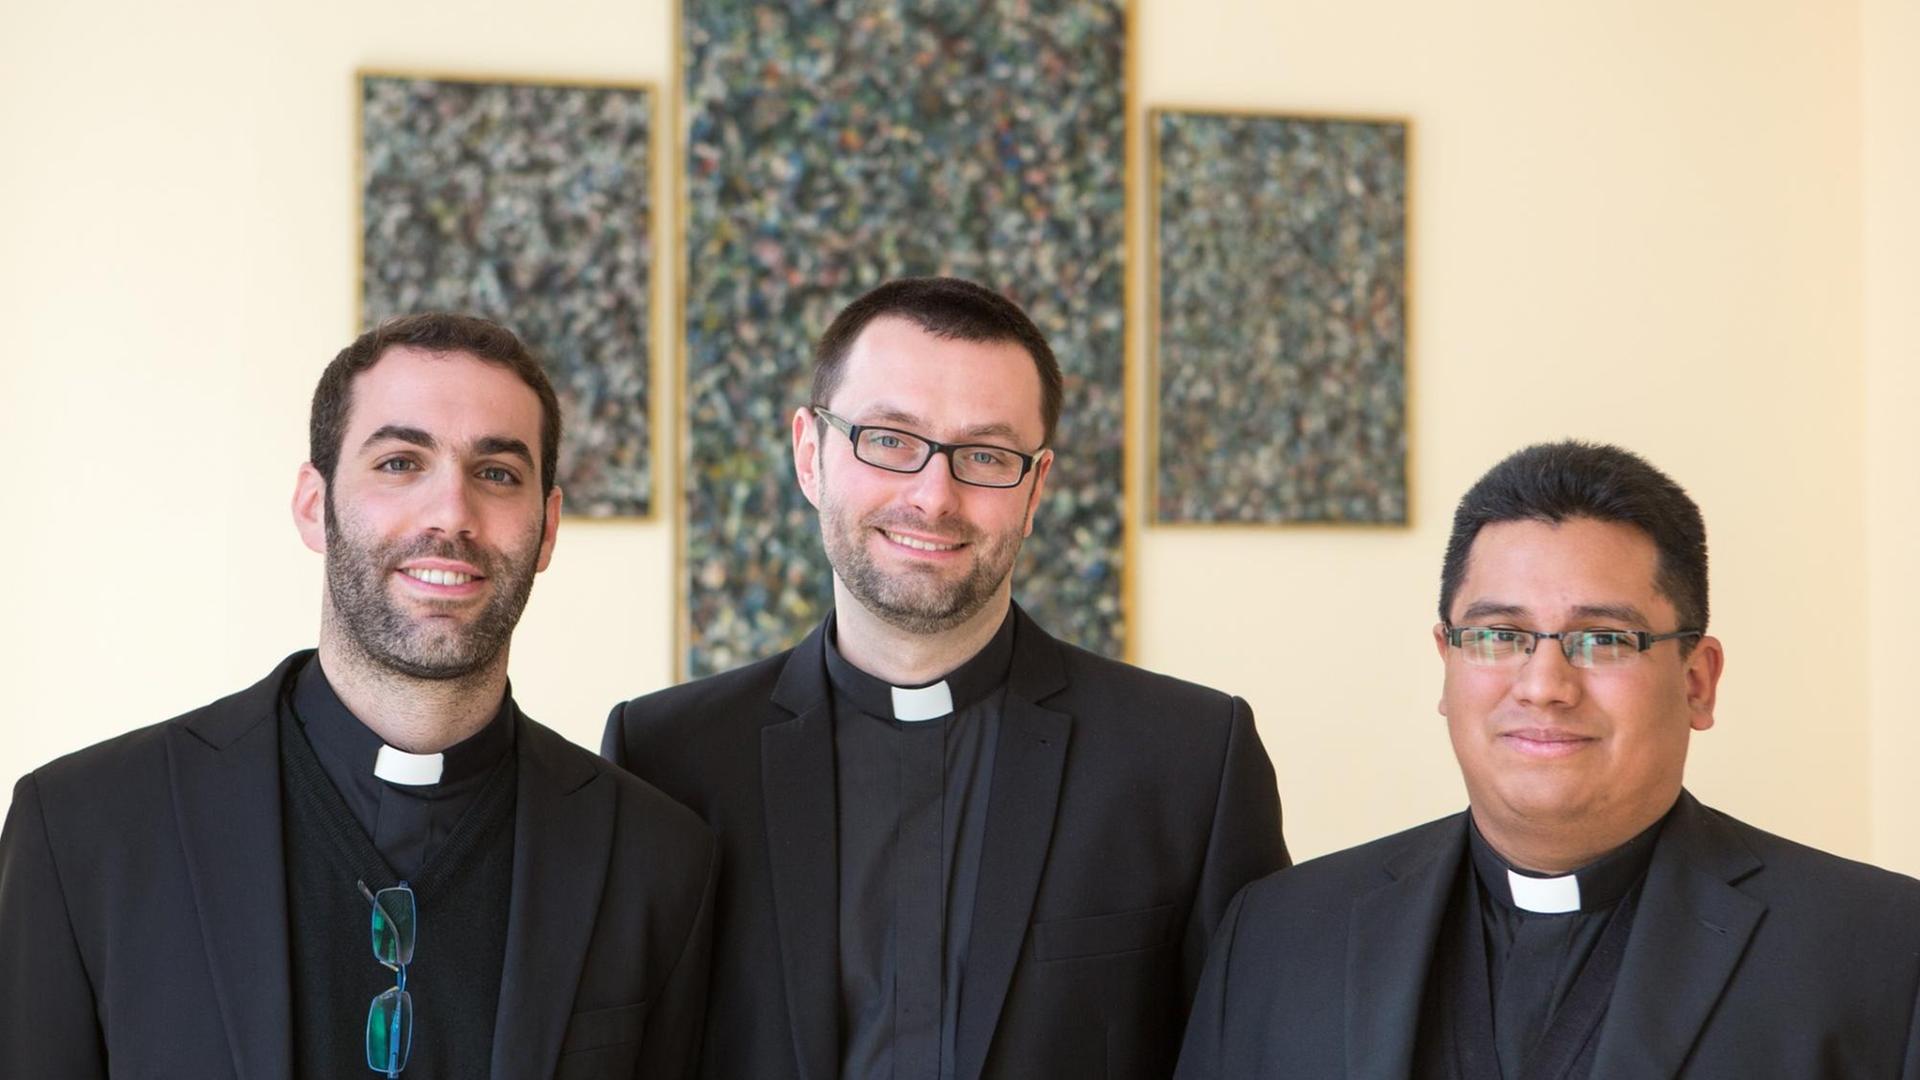 Die drei Priesteramtskandidaten Giovanni Donadel, Krzysztof Gaul und Ronald Prado Palma (v.l.) vor einem Kreuz in einem Kirchenraum